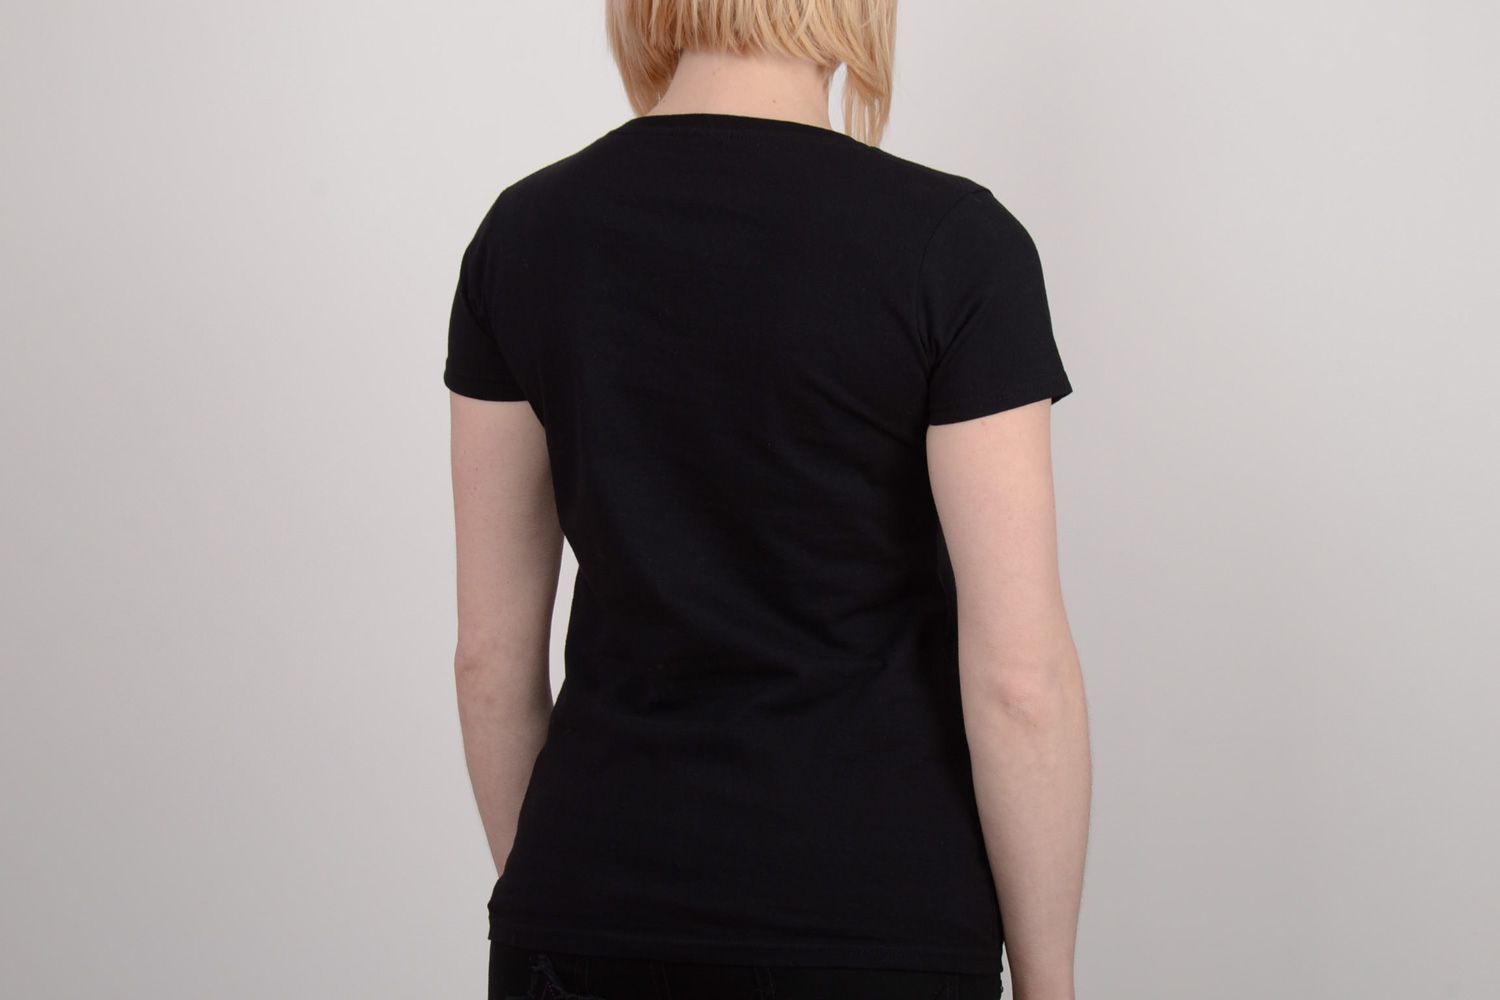 Joli t-shirt noir en coton pour femme avec dessin hibou original fait main photo 5